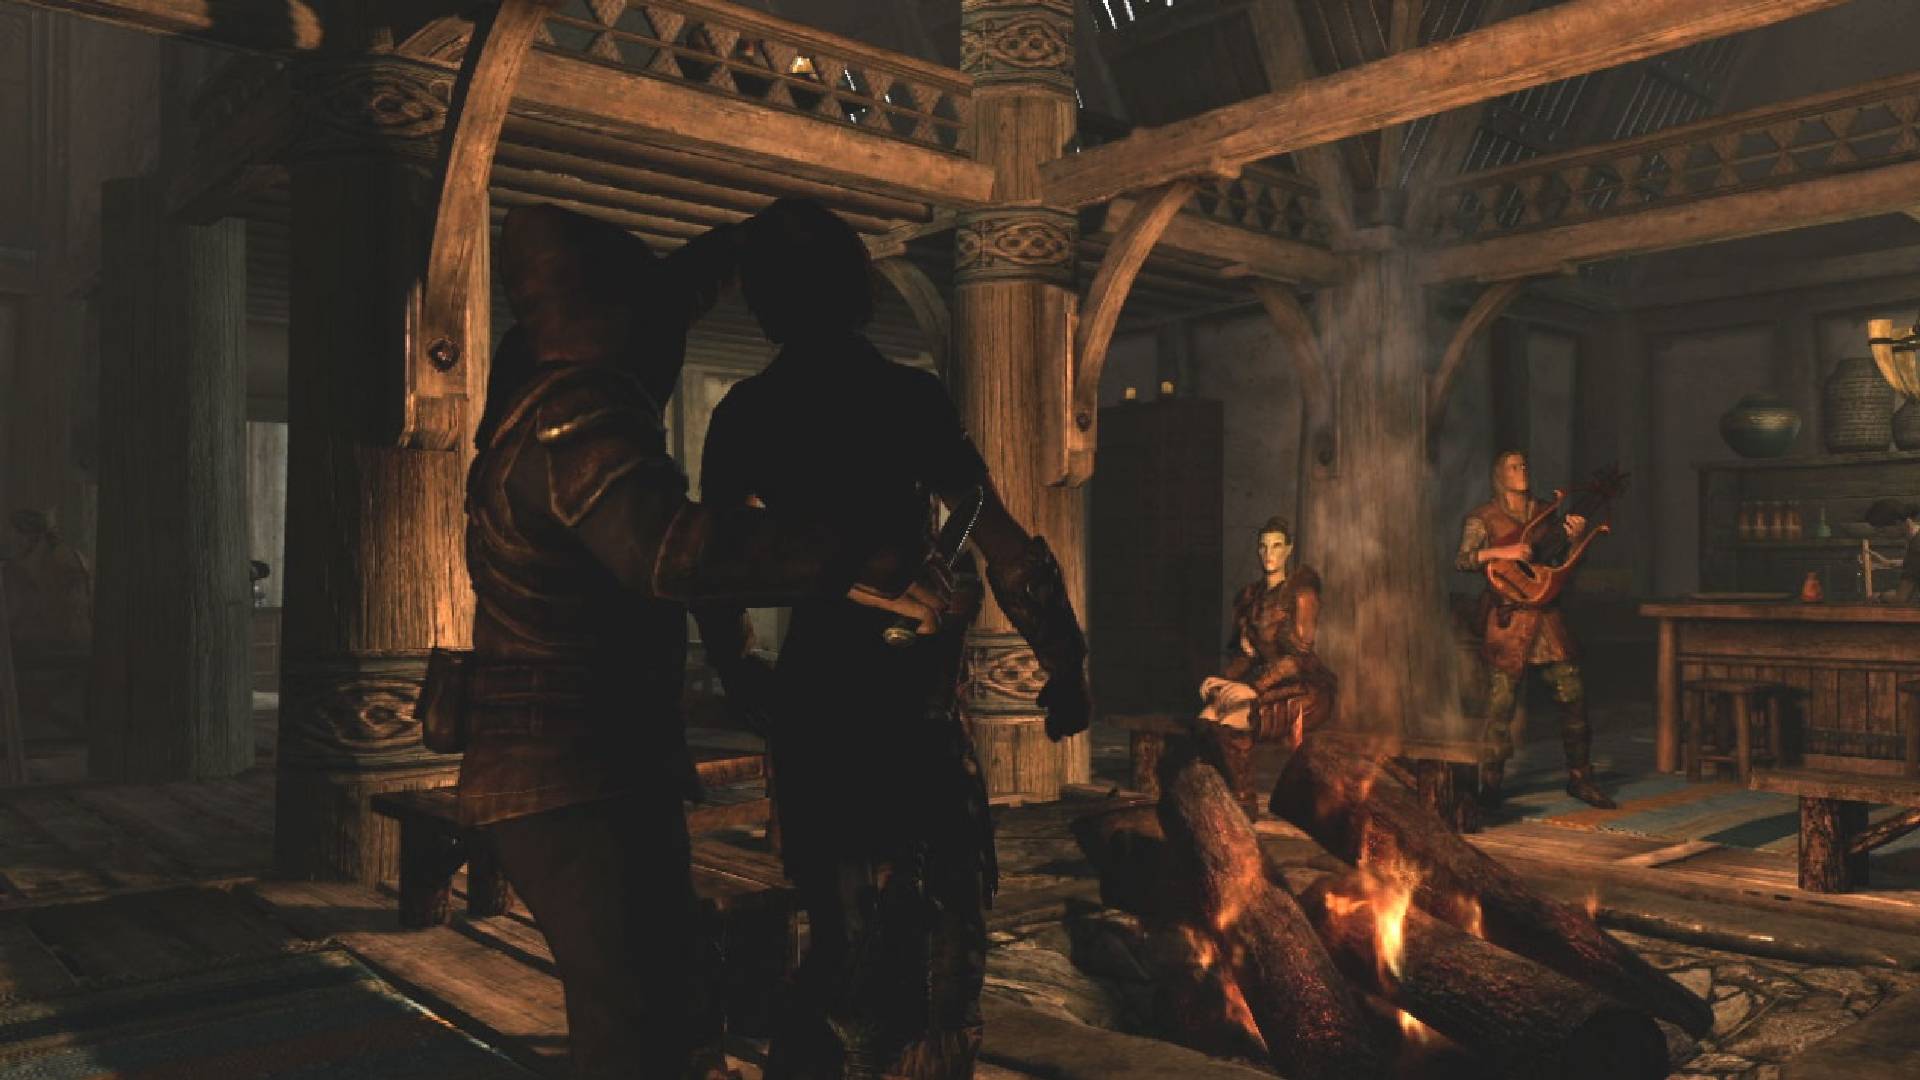 Veja a lista com os melhores mods para The Elder Scrolls V: Skyrim